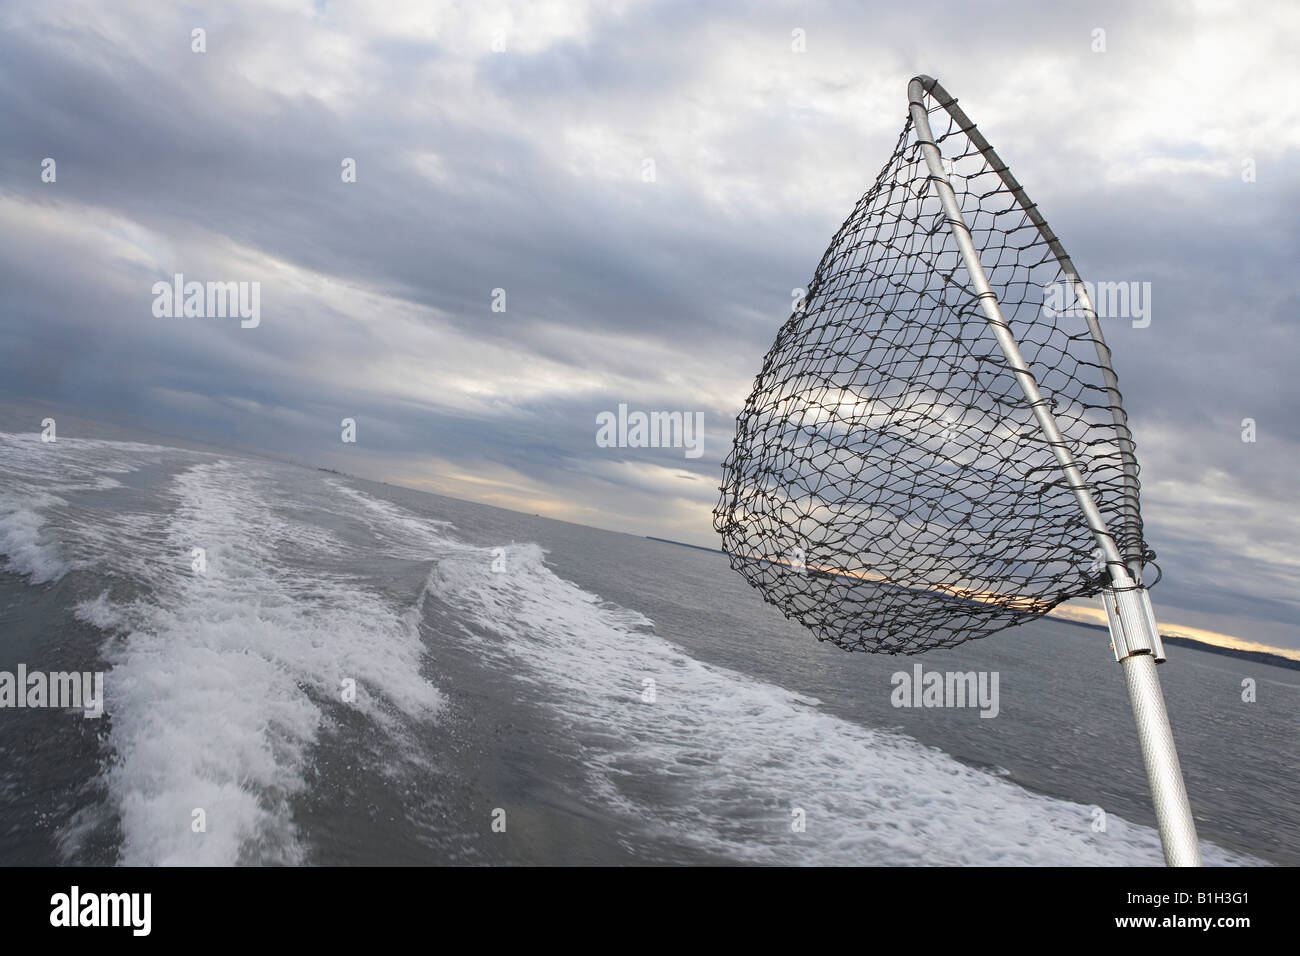 Fishing net sticking on back of speeding fishing boat Stock Photo